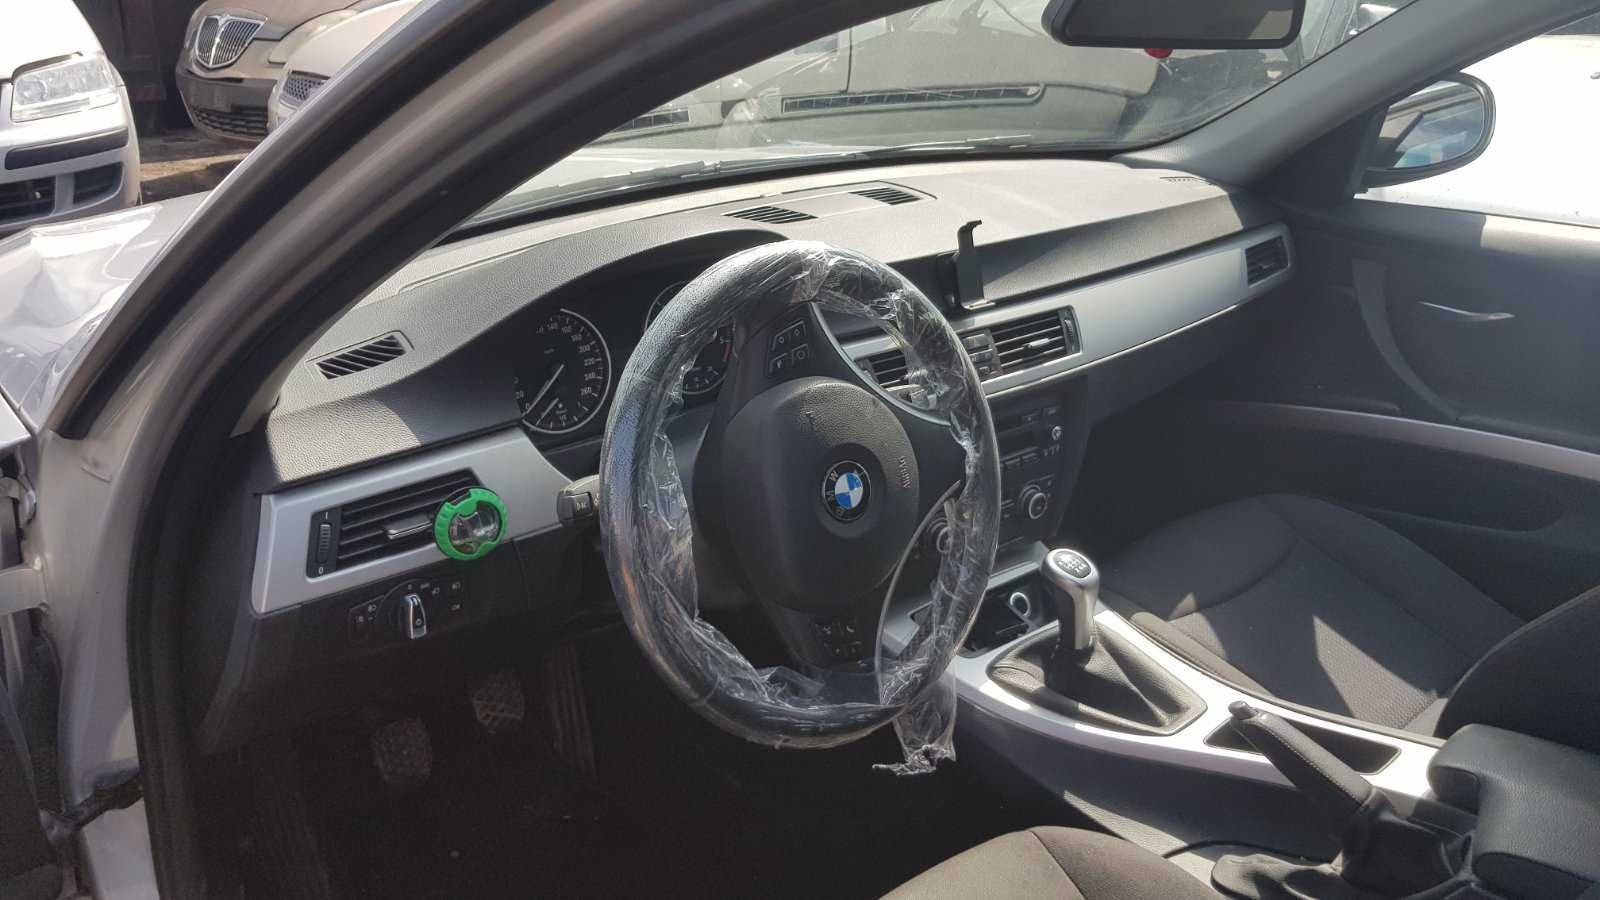 BMW 316,2.0 dizel